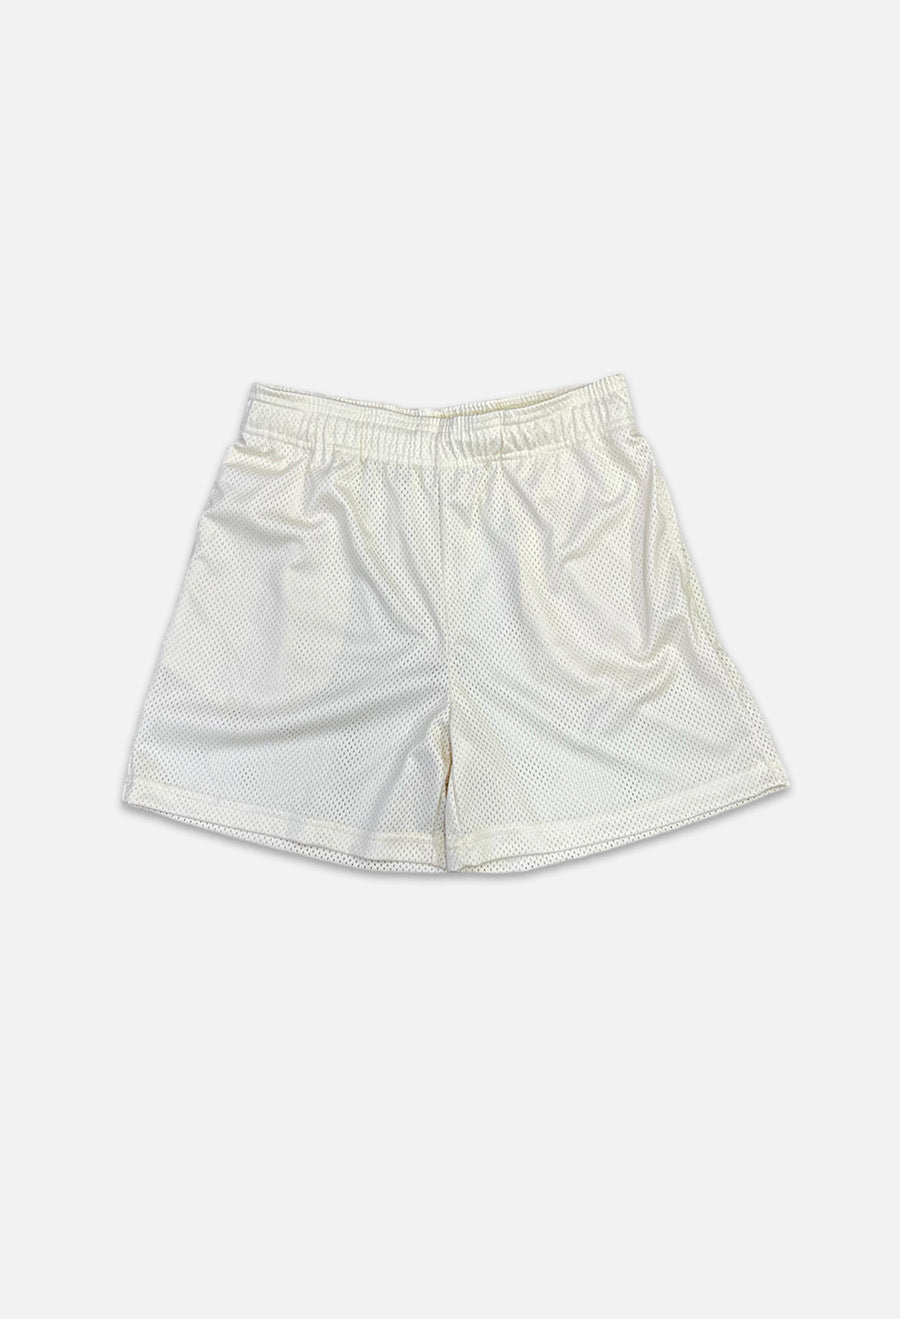 IR Mesh Shorts (Women's White)